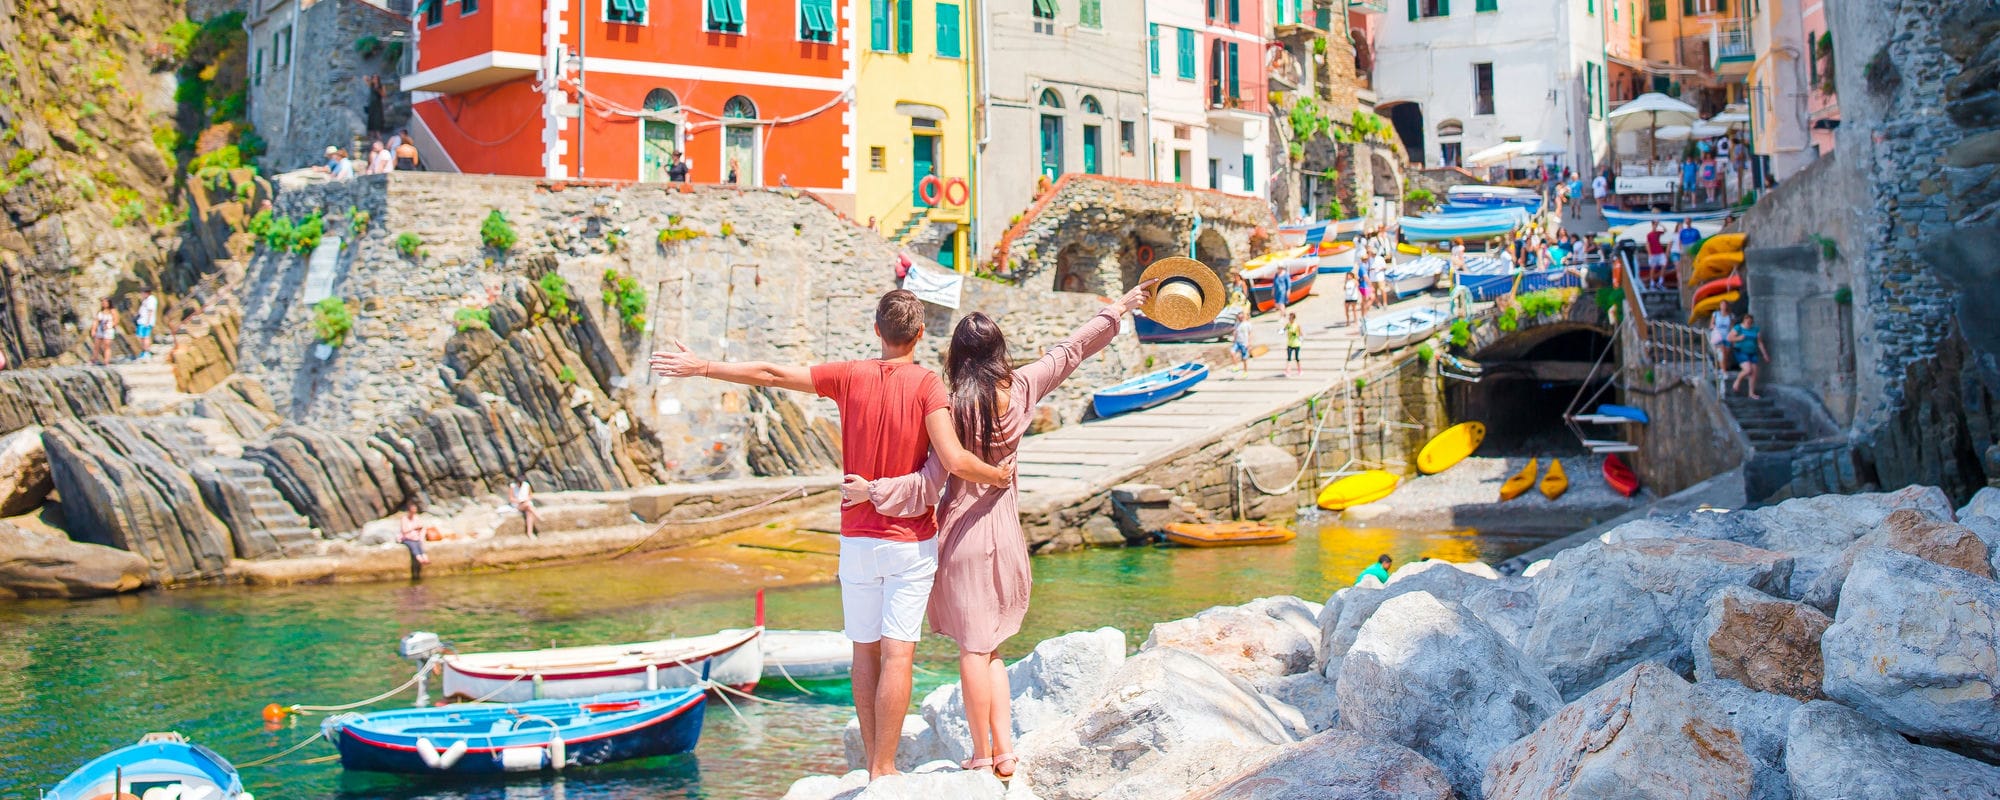 Couple in Cinque Terre, Italy - credits: TravnikovStudio/Shutterstock.com